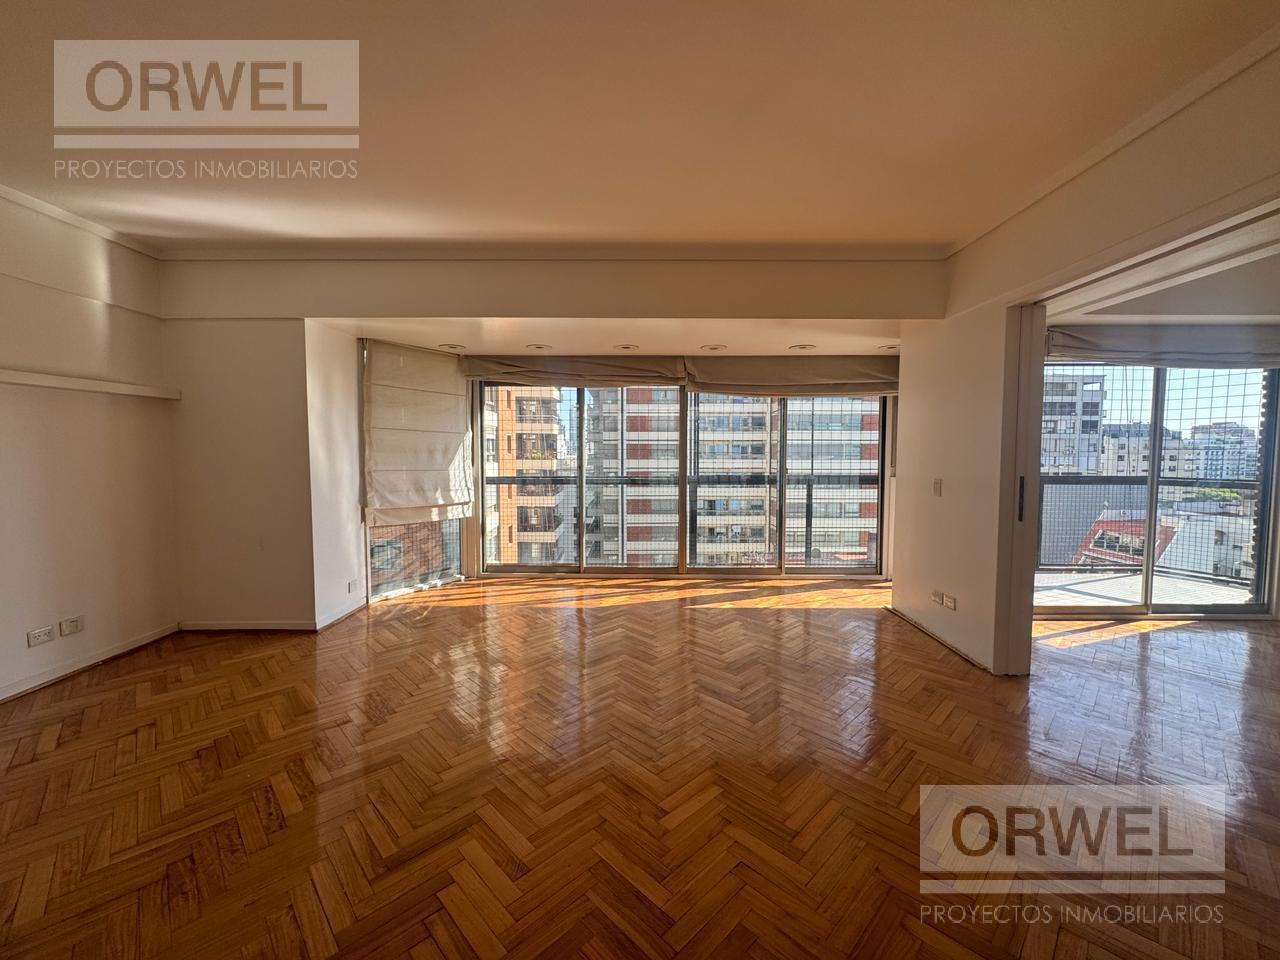 #5057997 | Rental | Apartment | Palermo Chico (Orwel Proyectos Inmobiliarios)